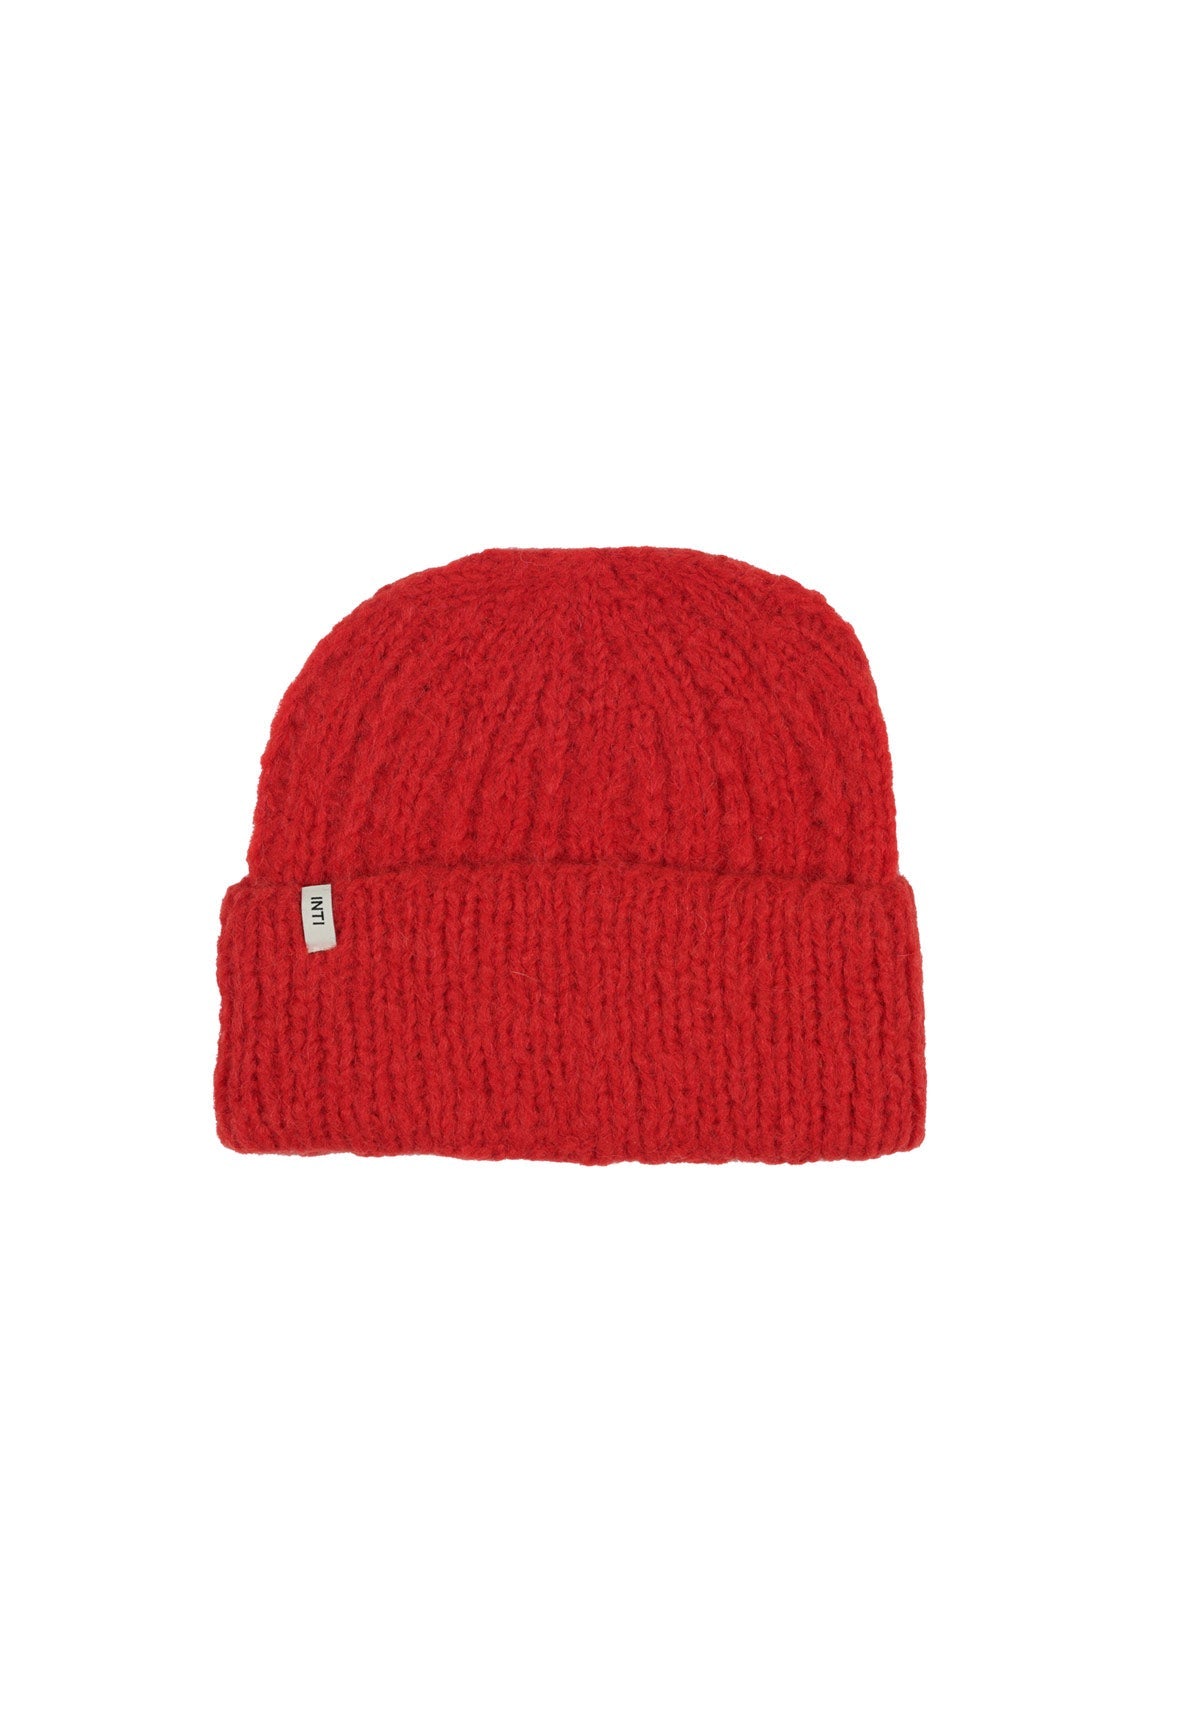 MEDELLIN HAT RED